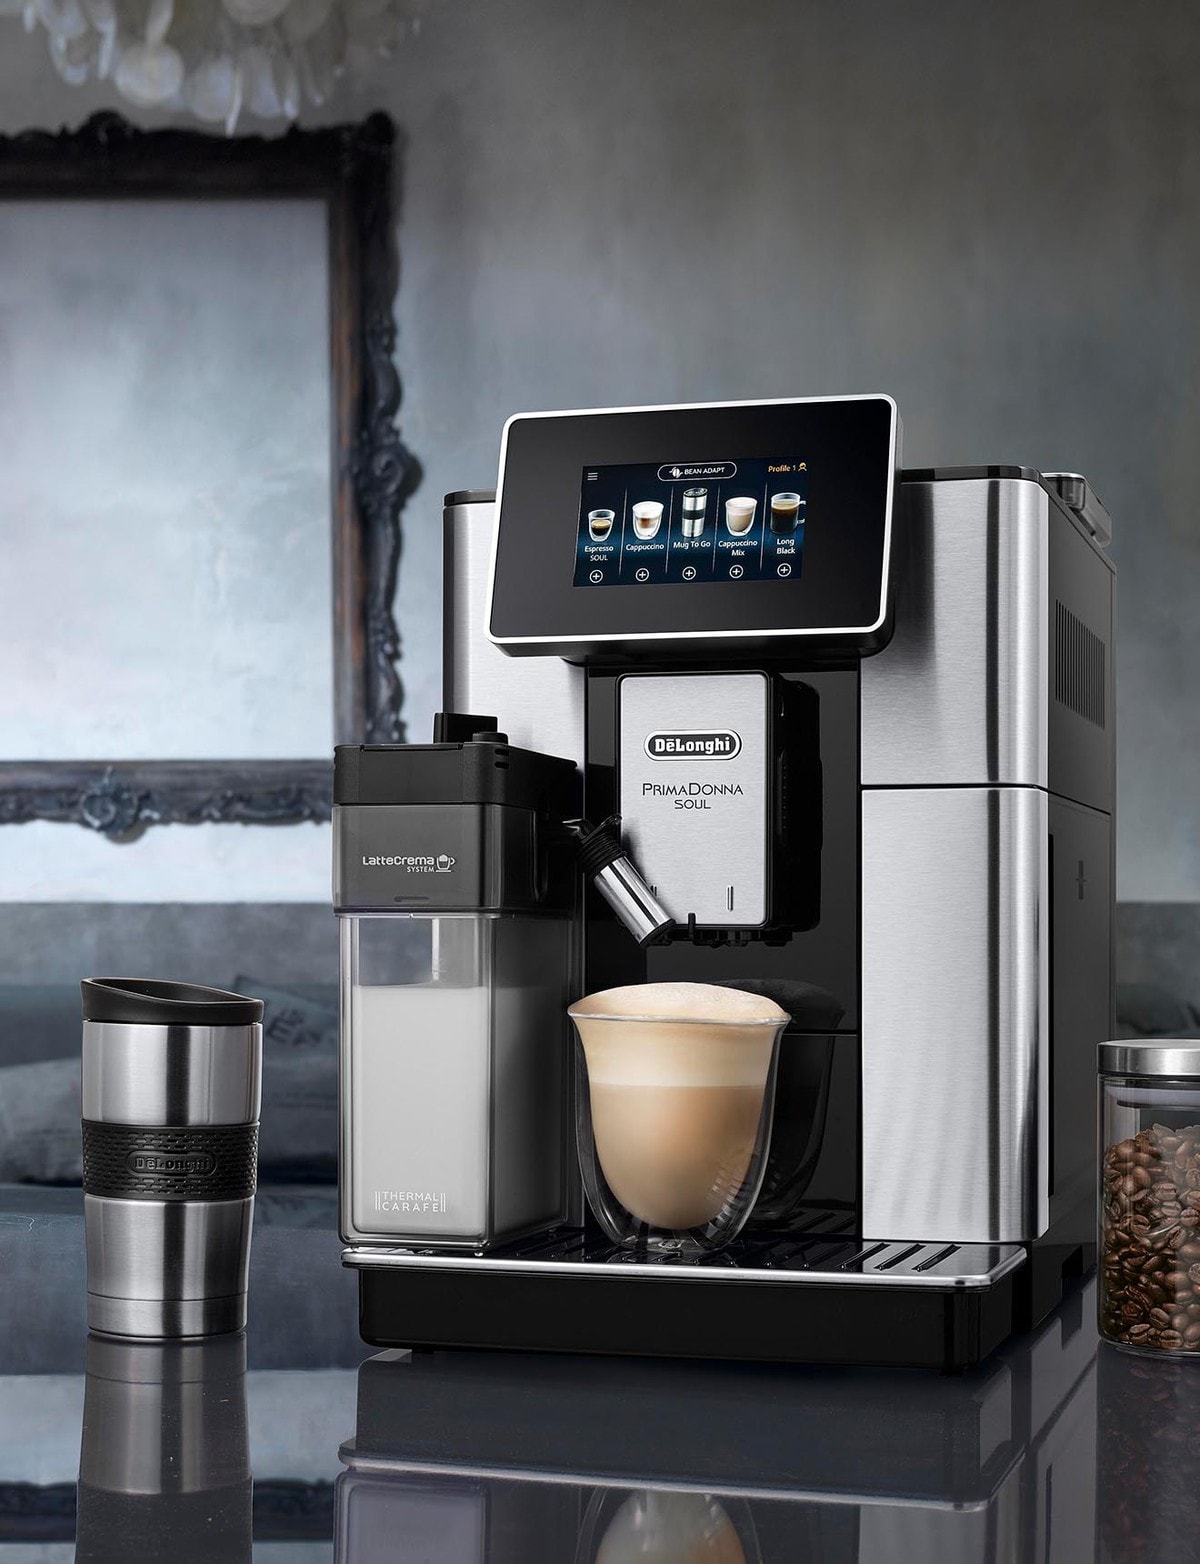 DeLonghi Primadonna Soul Auto Coffee Machine, Silver, ECAM61075MB